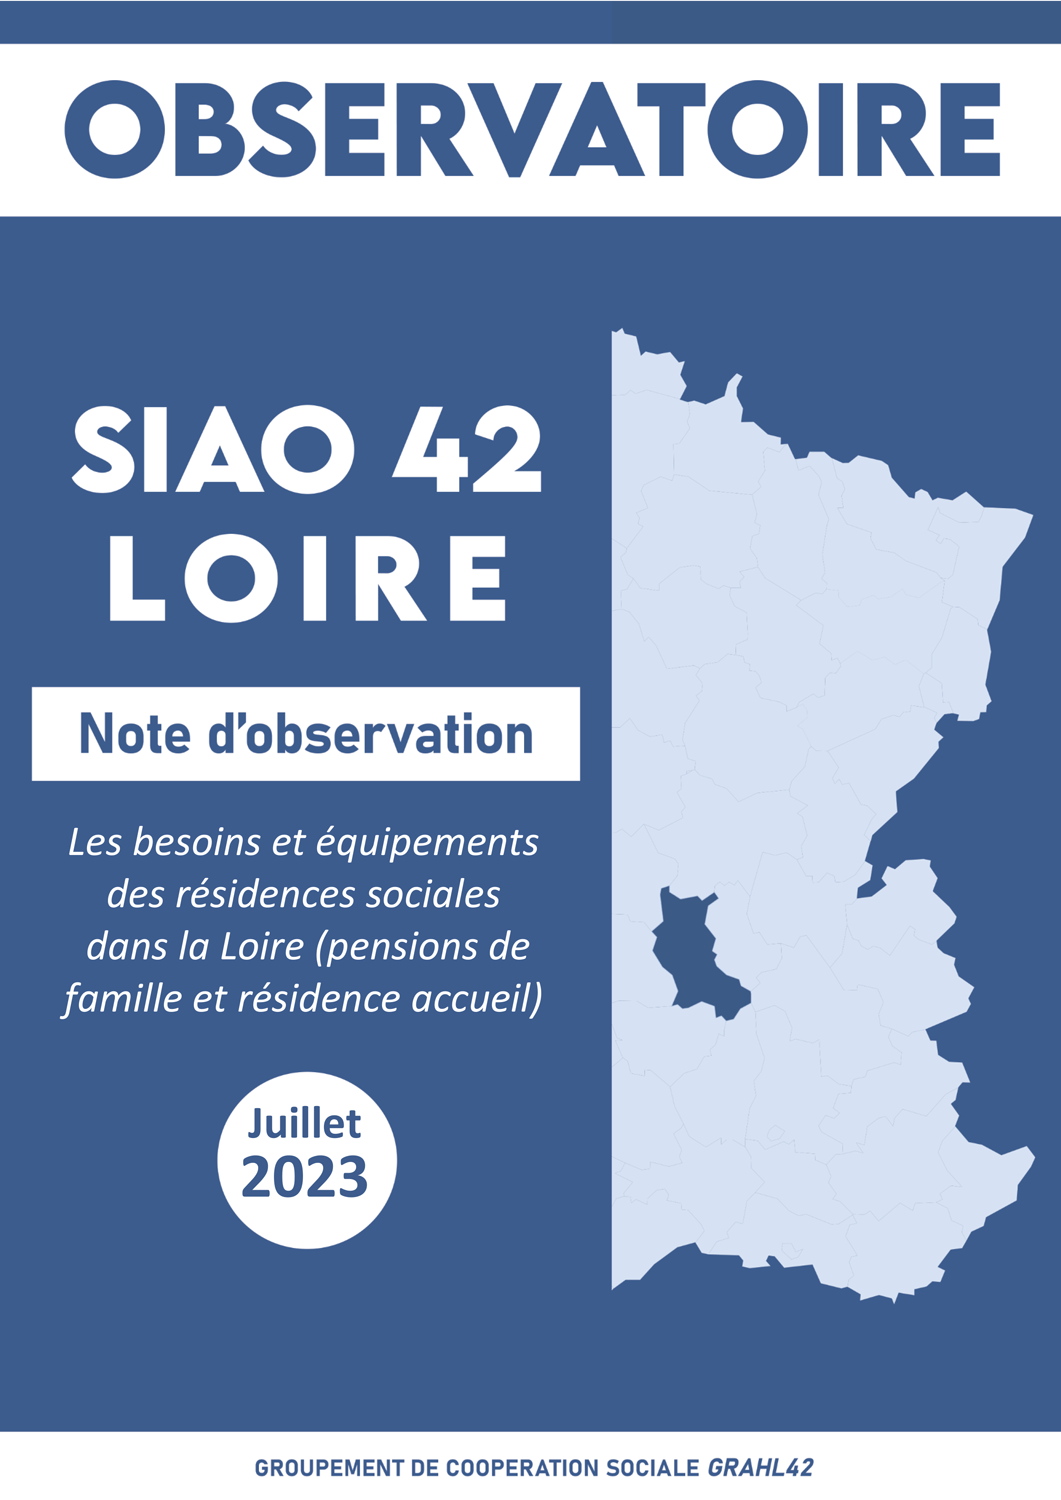 Note d'observation - Les besoins et équipements des résidences sociales dans la Loire (Juillet 2023)